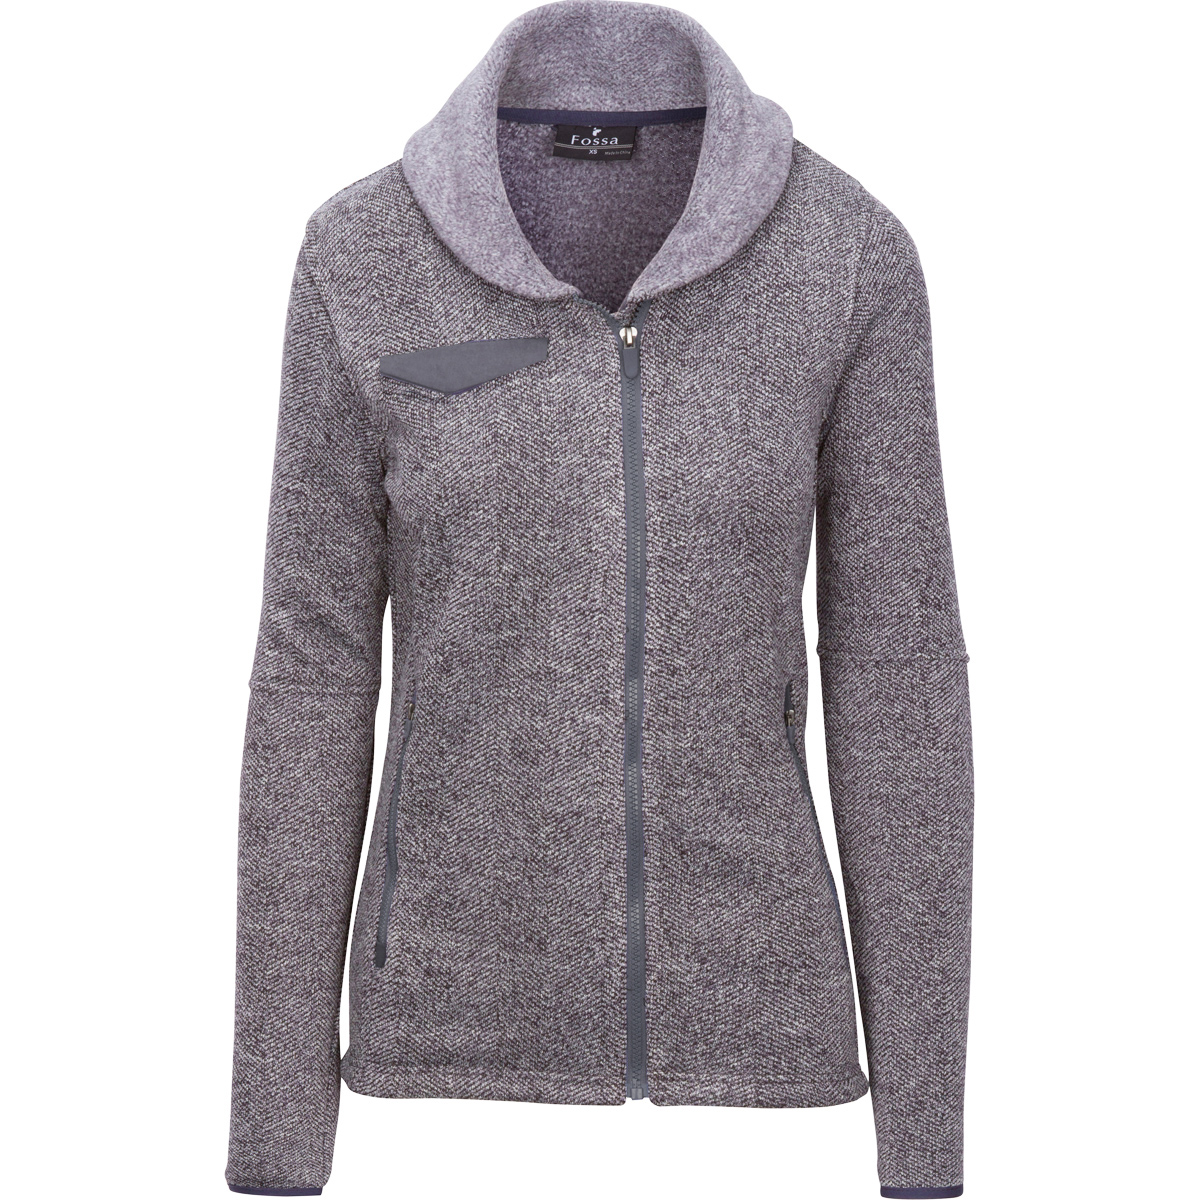 Fossa Apparel 3728 - Ladies Kentfield Sweater Fleece Jacket